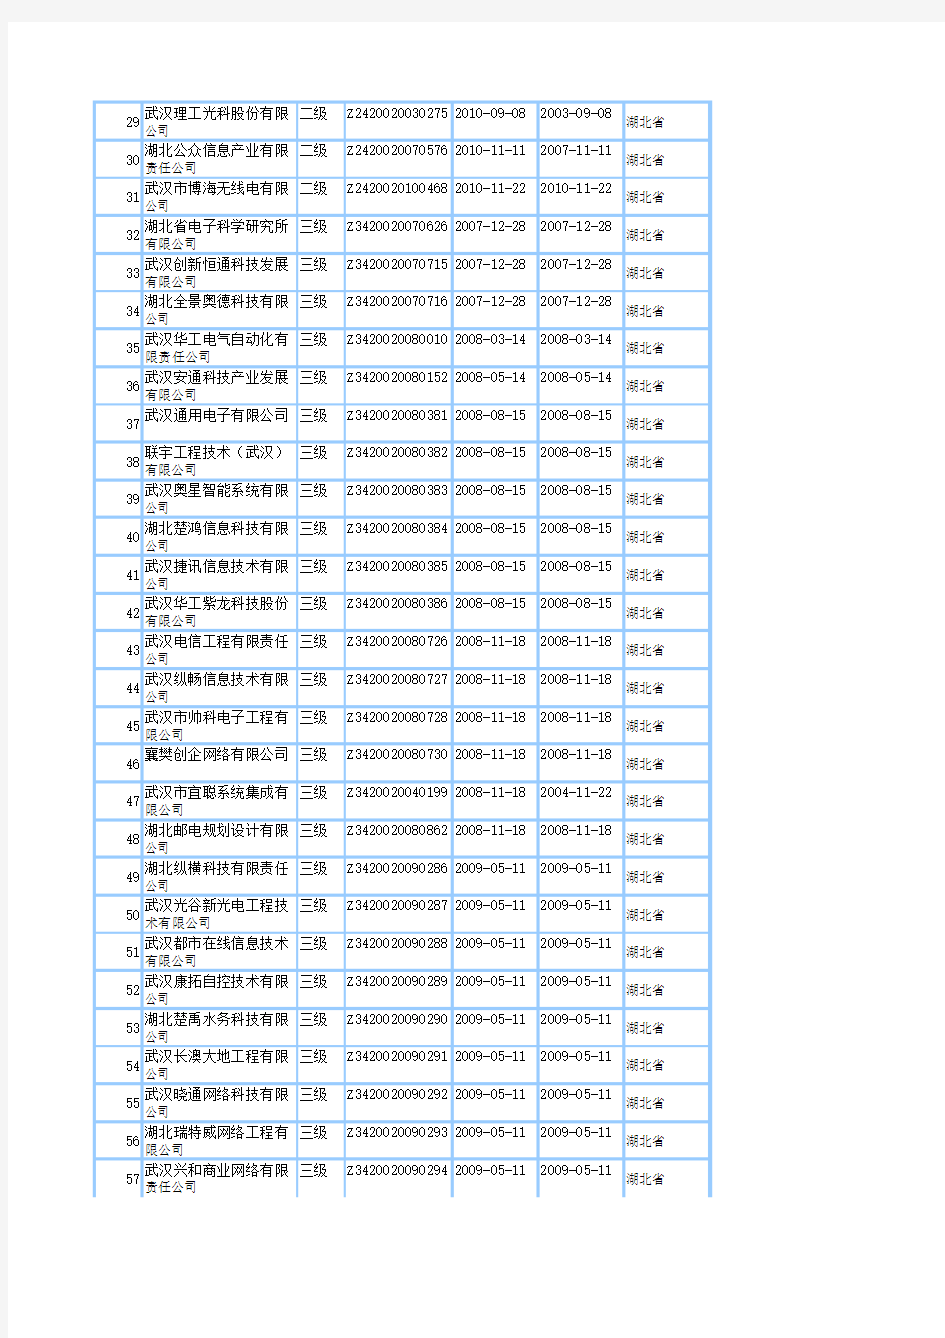 2011最新湖北省系统集成商名单